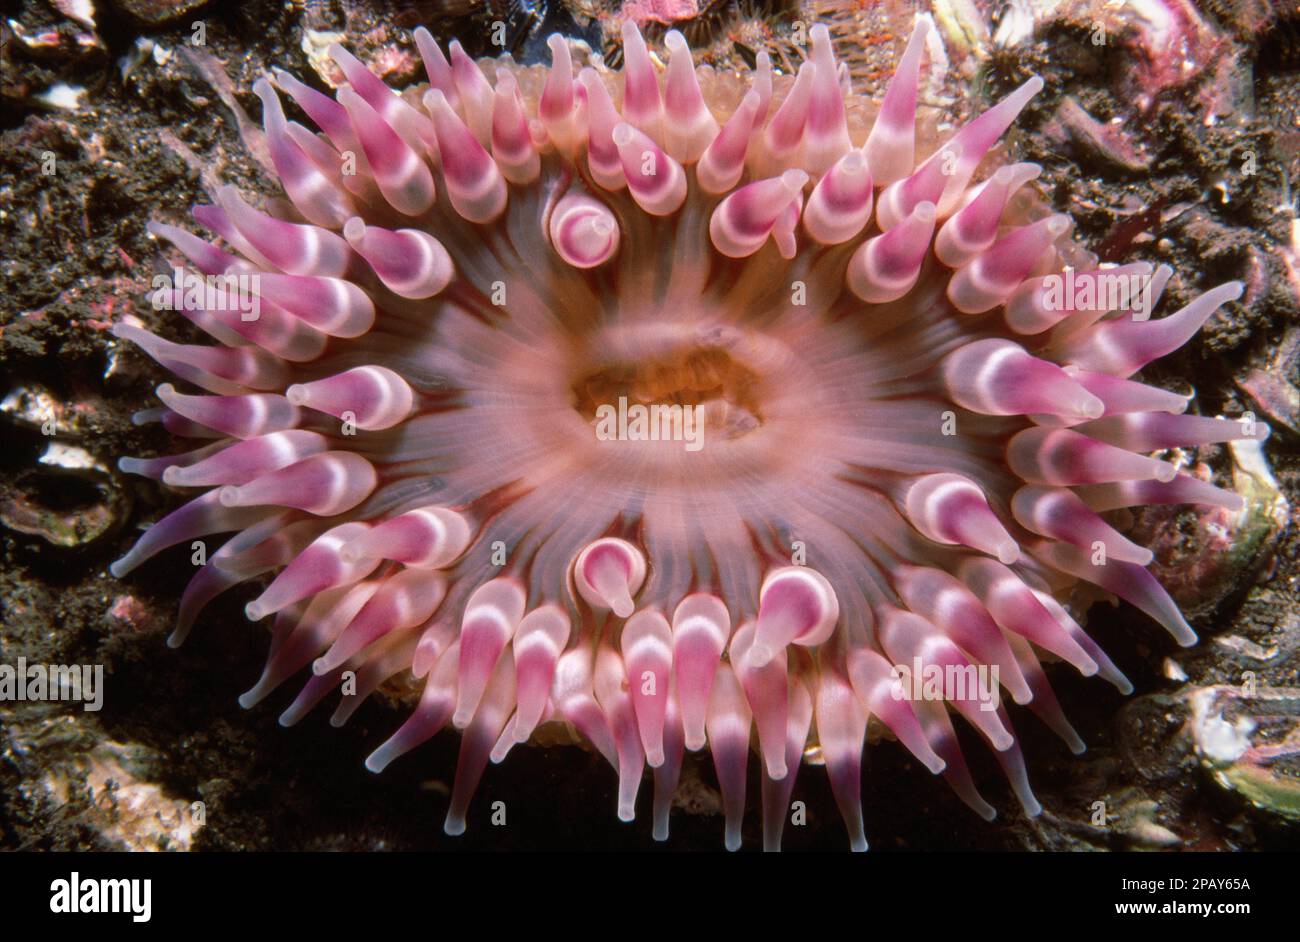 Dahlia anemone (Urticina felina) in Scottish coastal waters, UK. Stock Photo